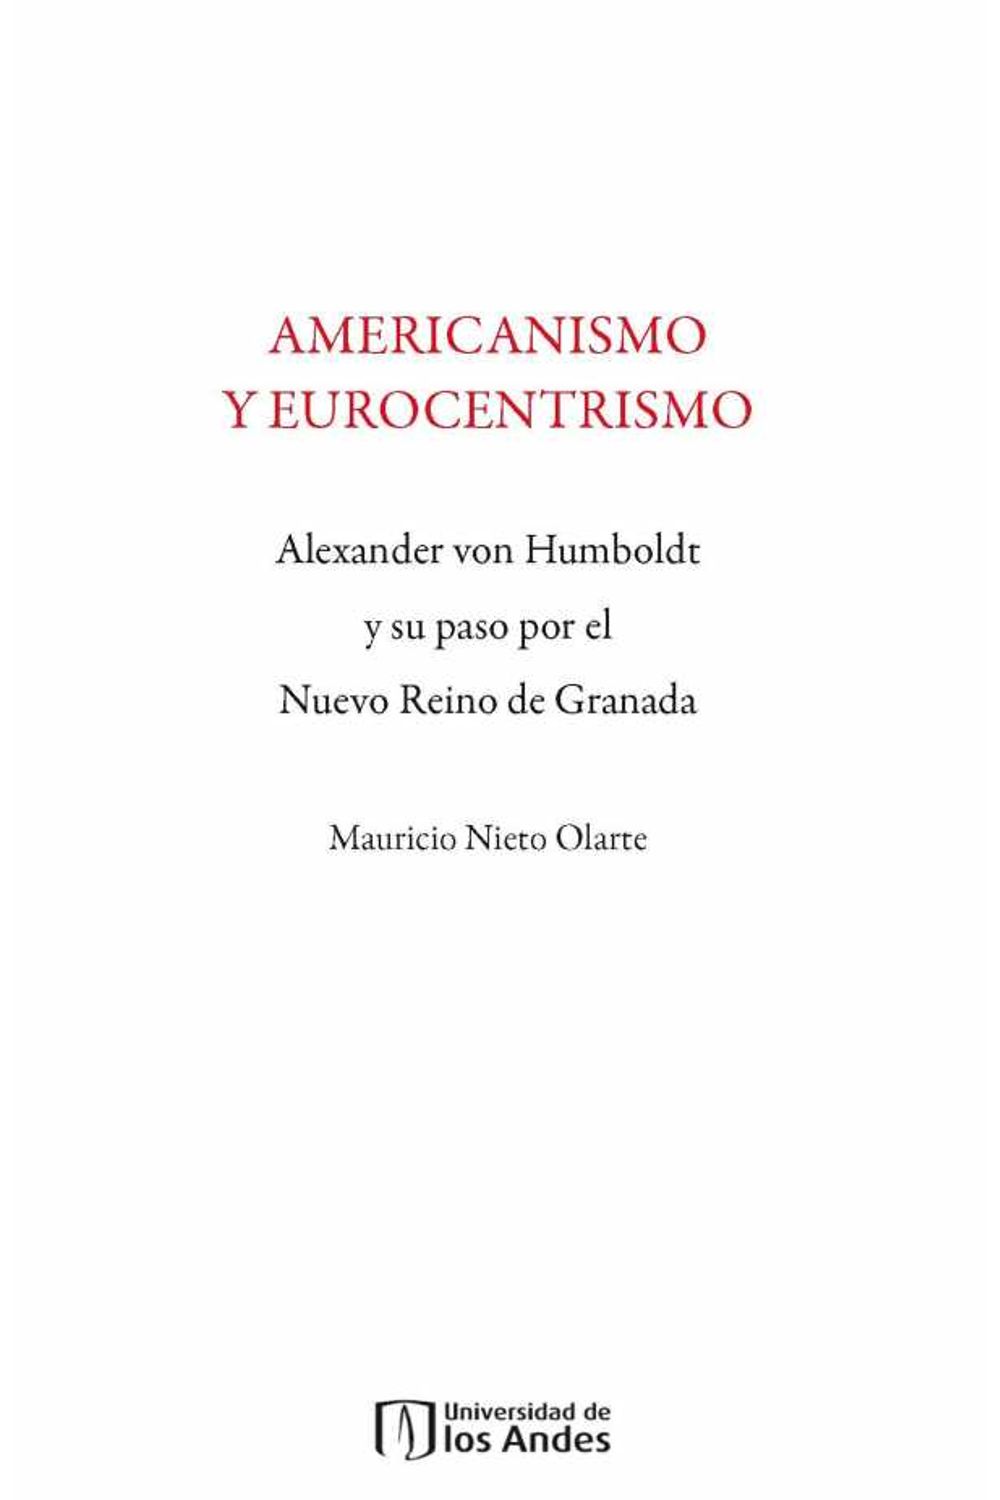 bw-americanismo-y-eurocentrismo-u-de-los-andes-9789586955683